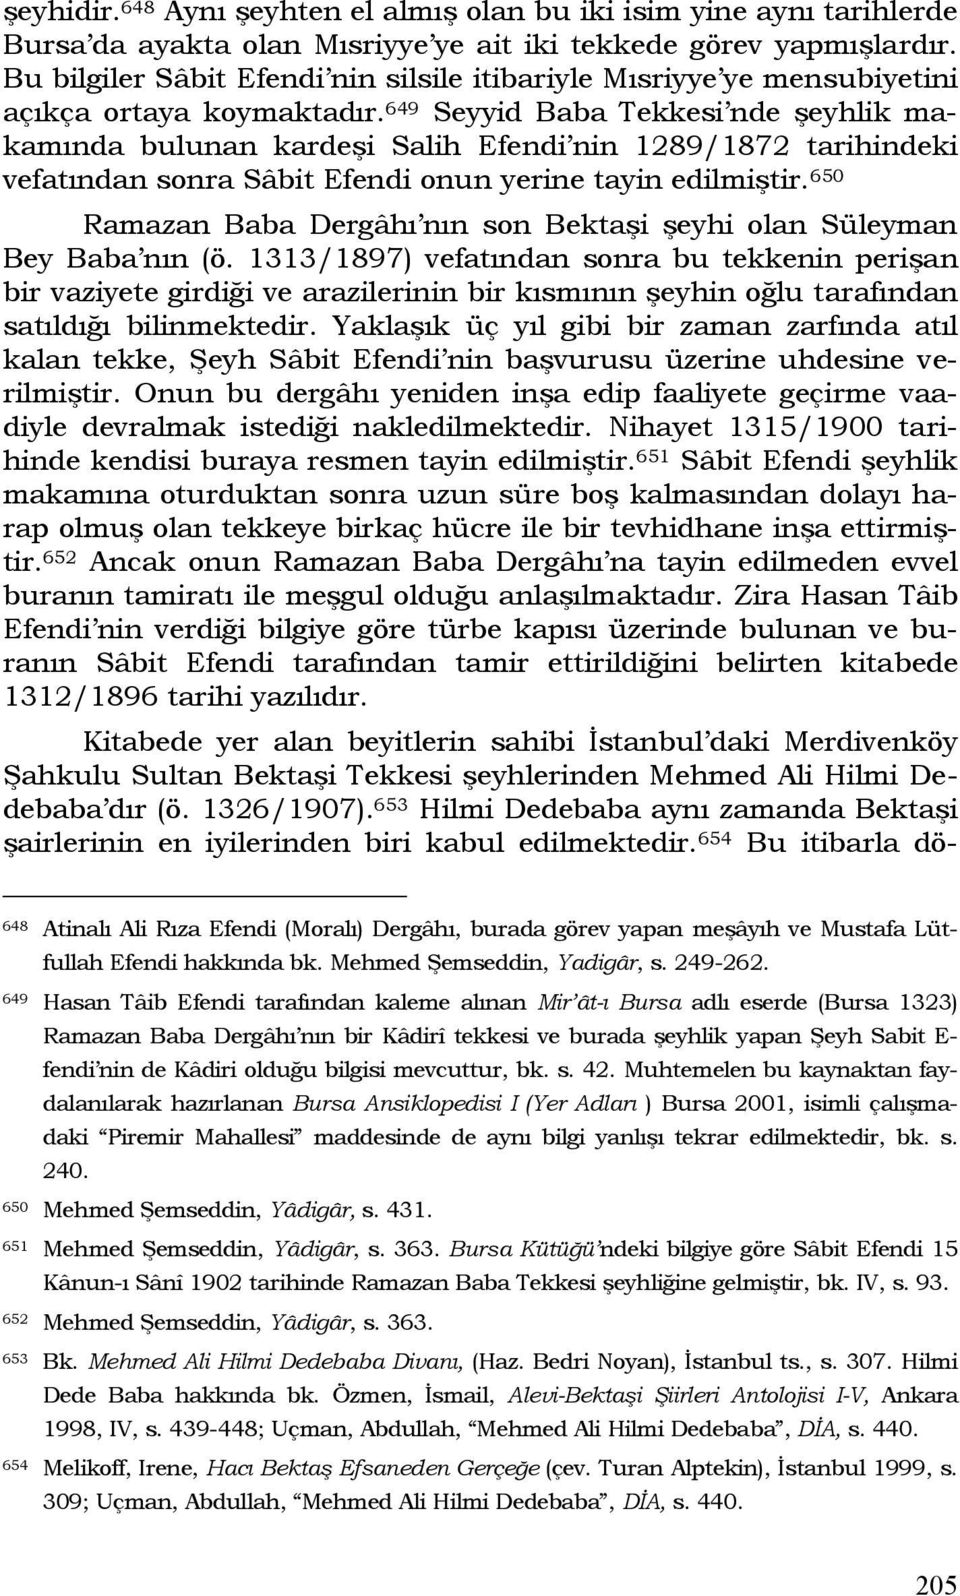 649 Seyyid Baba Tekkesi nde şeyhlik makamında bulunan kardeşi Salih Efendi nin 1289/1872 tarihindeki vefatından sonra Sâbit Efendi onun yerine tayin edilmiştir.